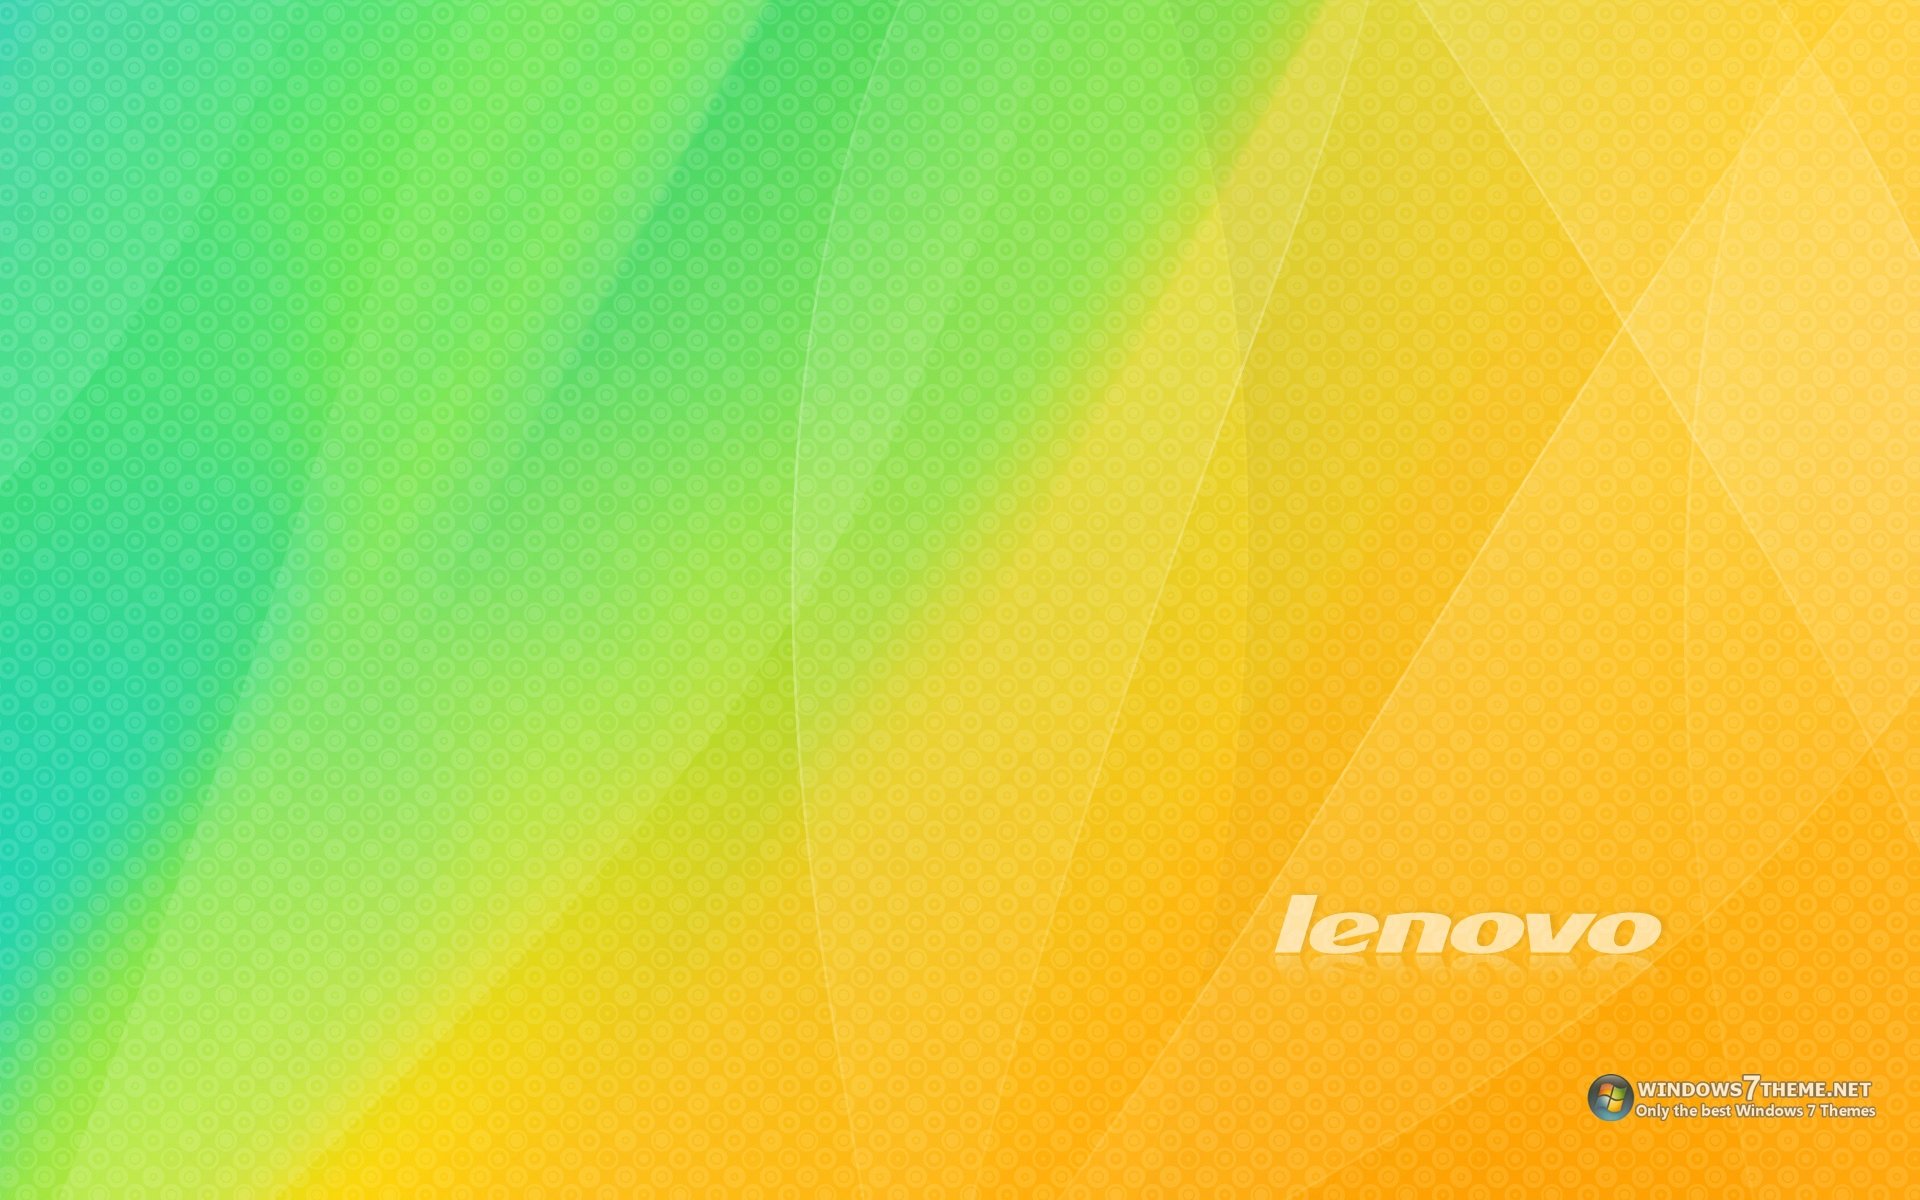 Lenovo Puter Wallpaper